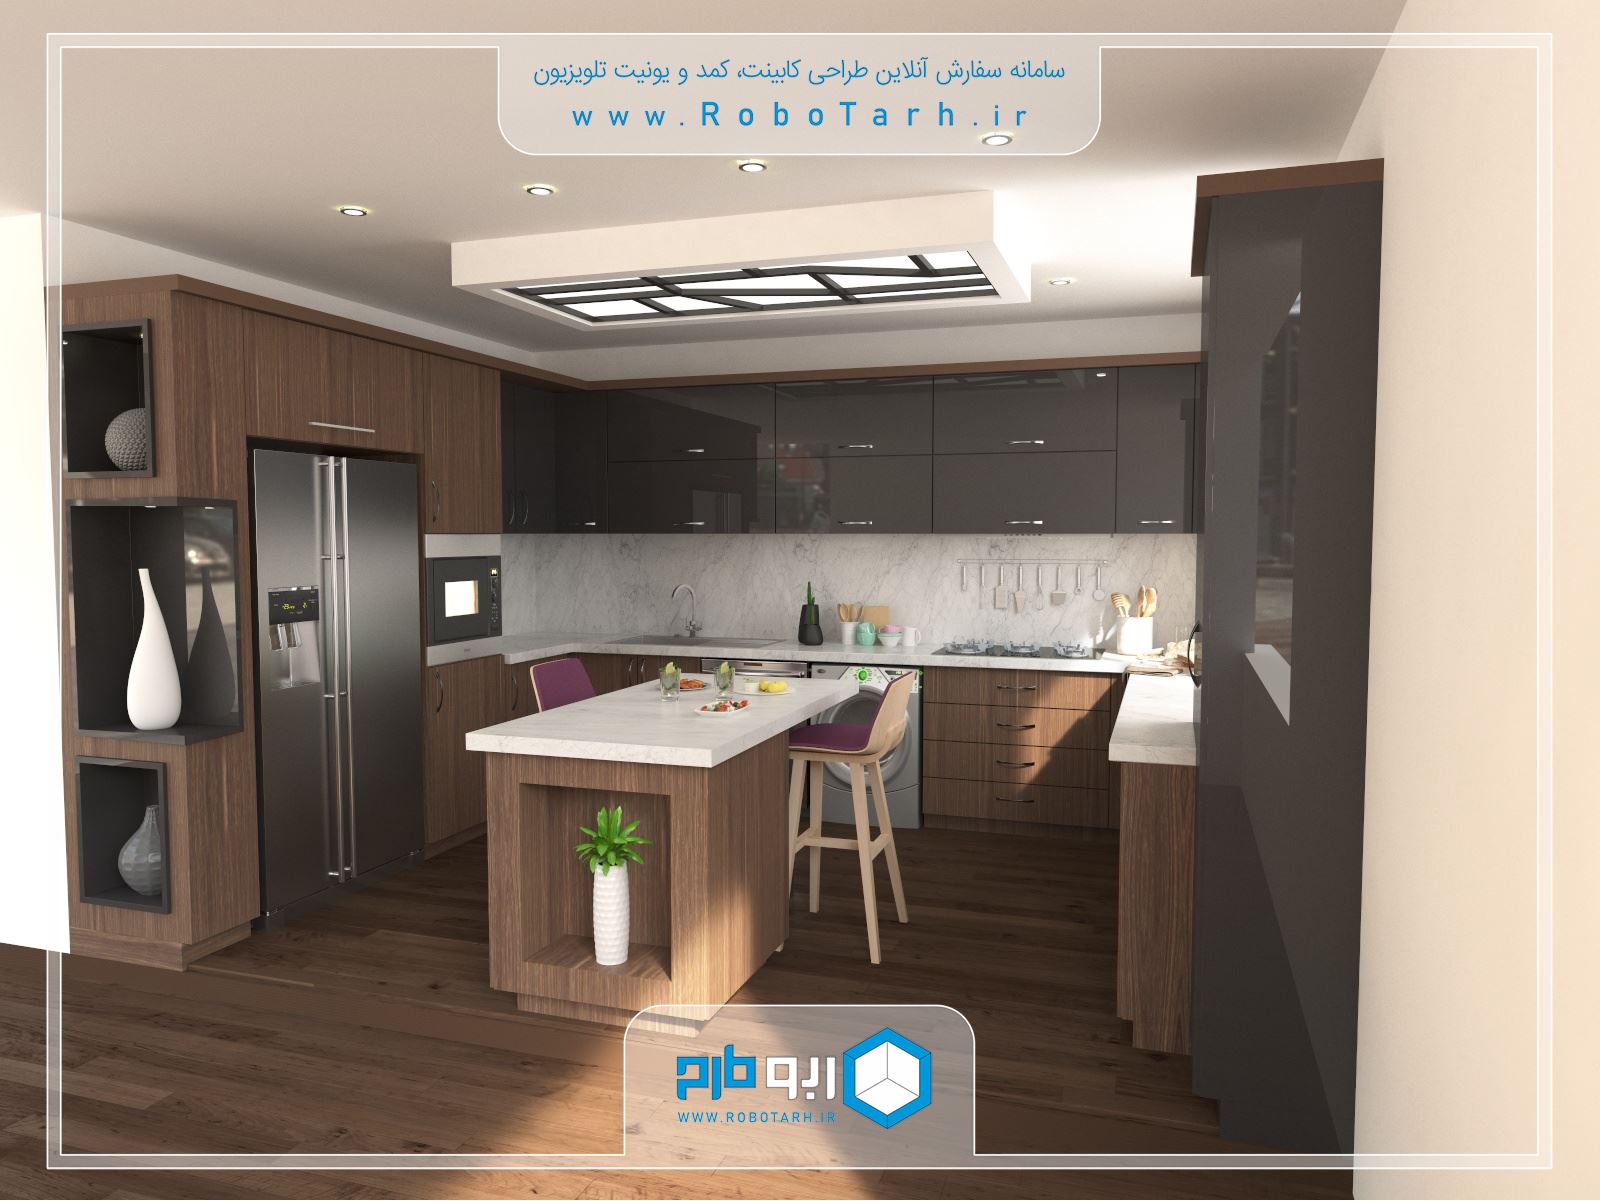 طراحی کابینت آشپزخانه مدرن قهوه ای و خاکستری رنگ با چیدمان یو شکل - ربوطرح